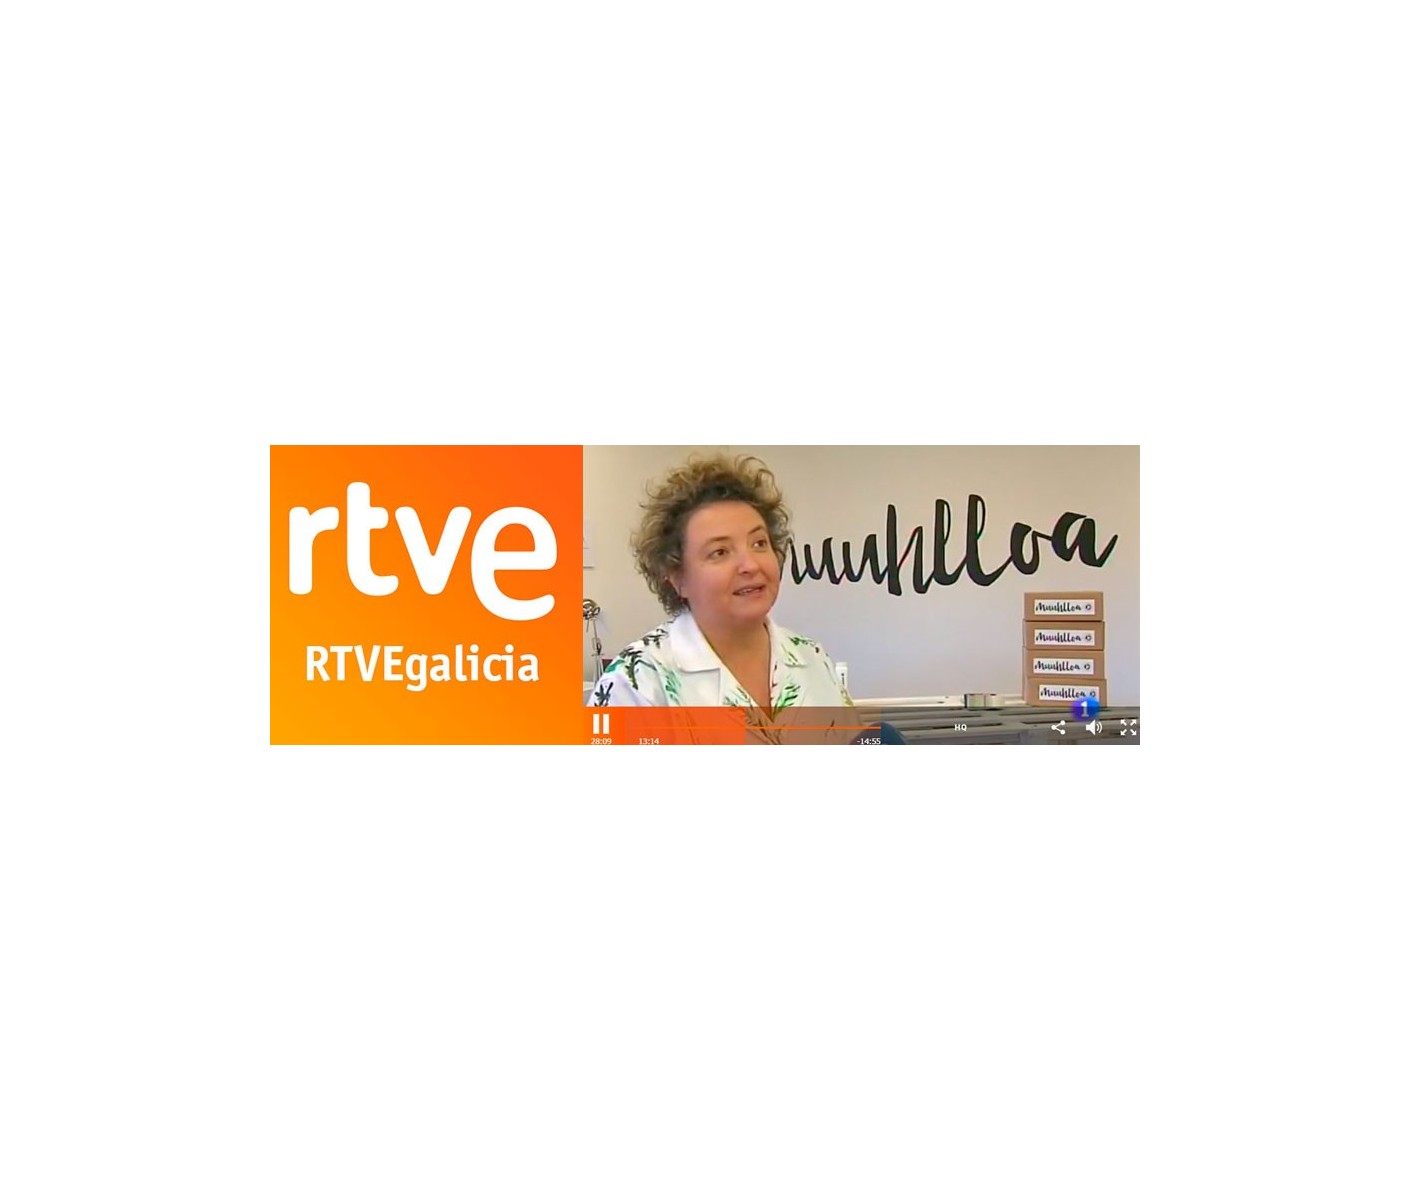 Muuhlloa - Telexornal RTVE